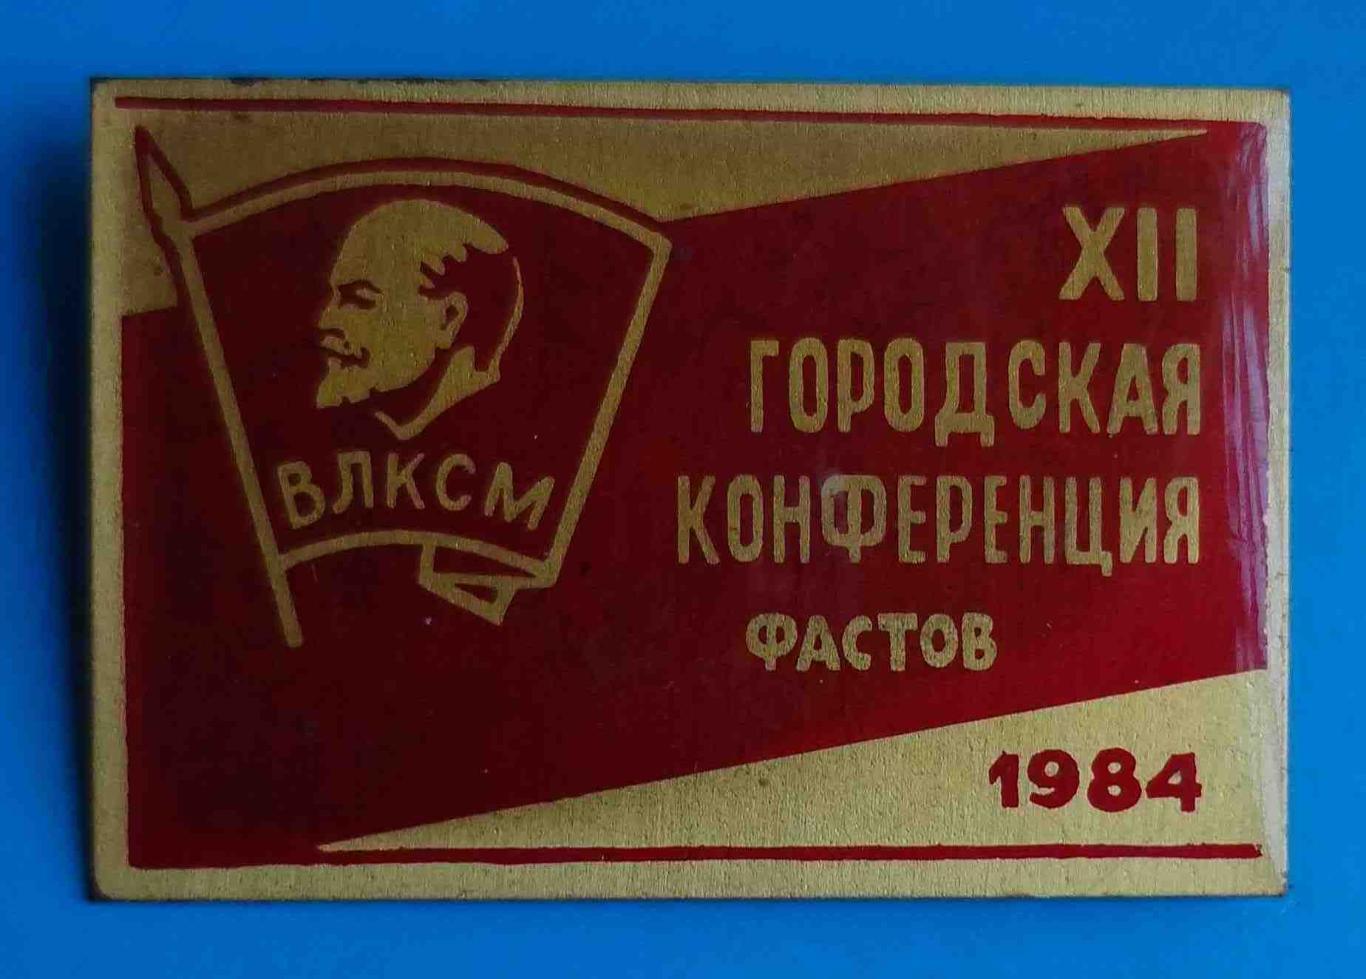 12 городская комсомольская конференция Фастов 1984 ВЛКСМ Ленин